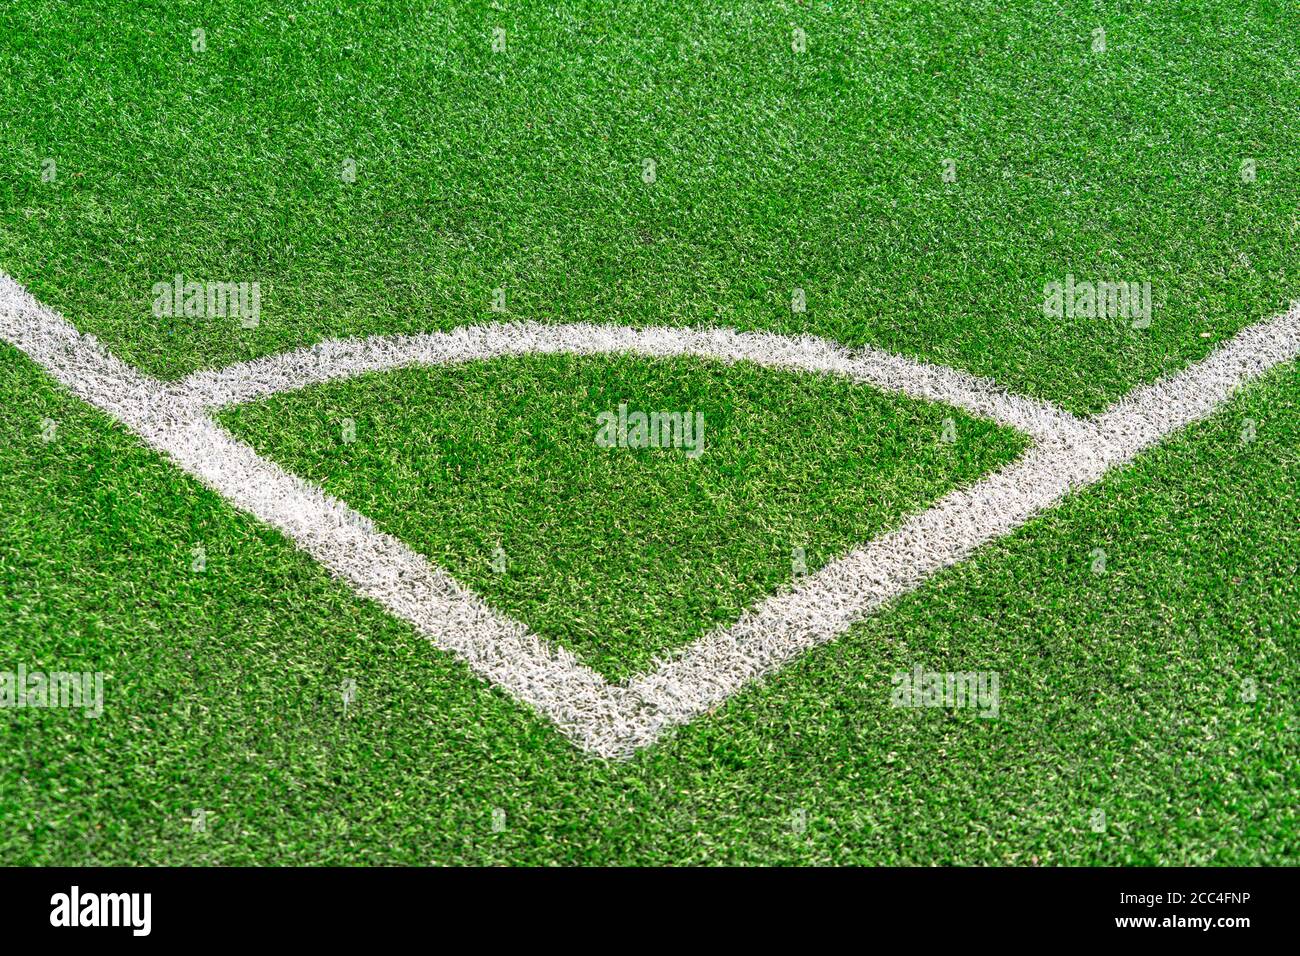 Fußball Fußball feld Ecke mit weißen Markierungen Stockfoto